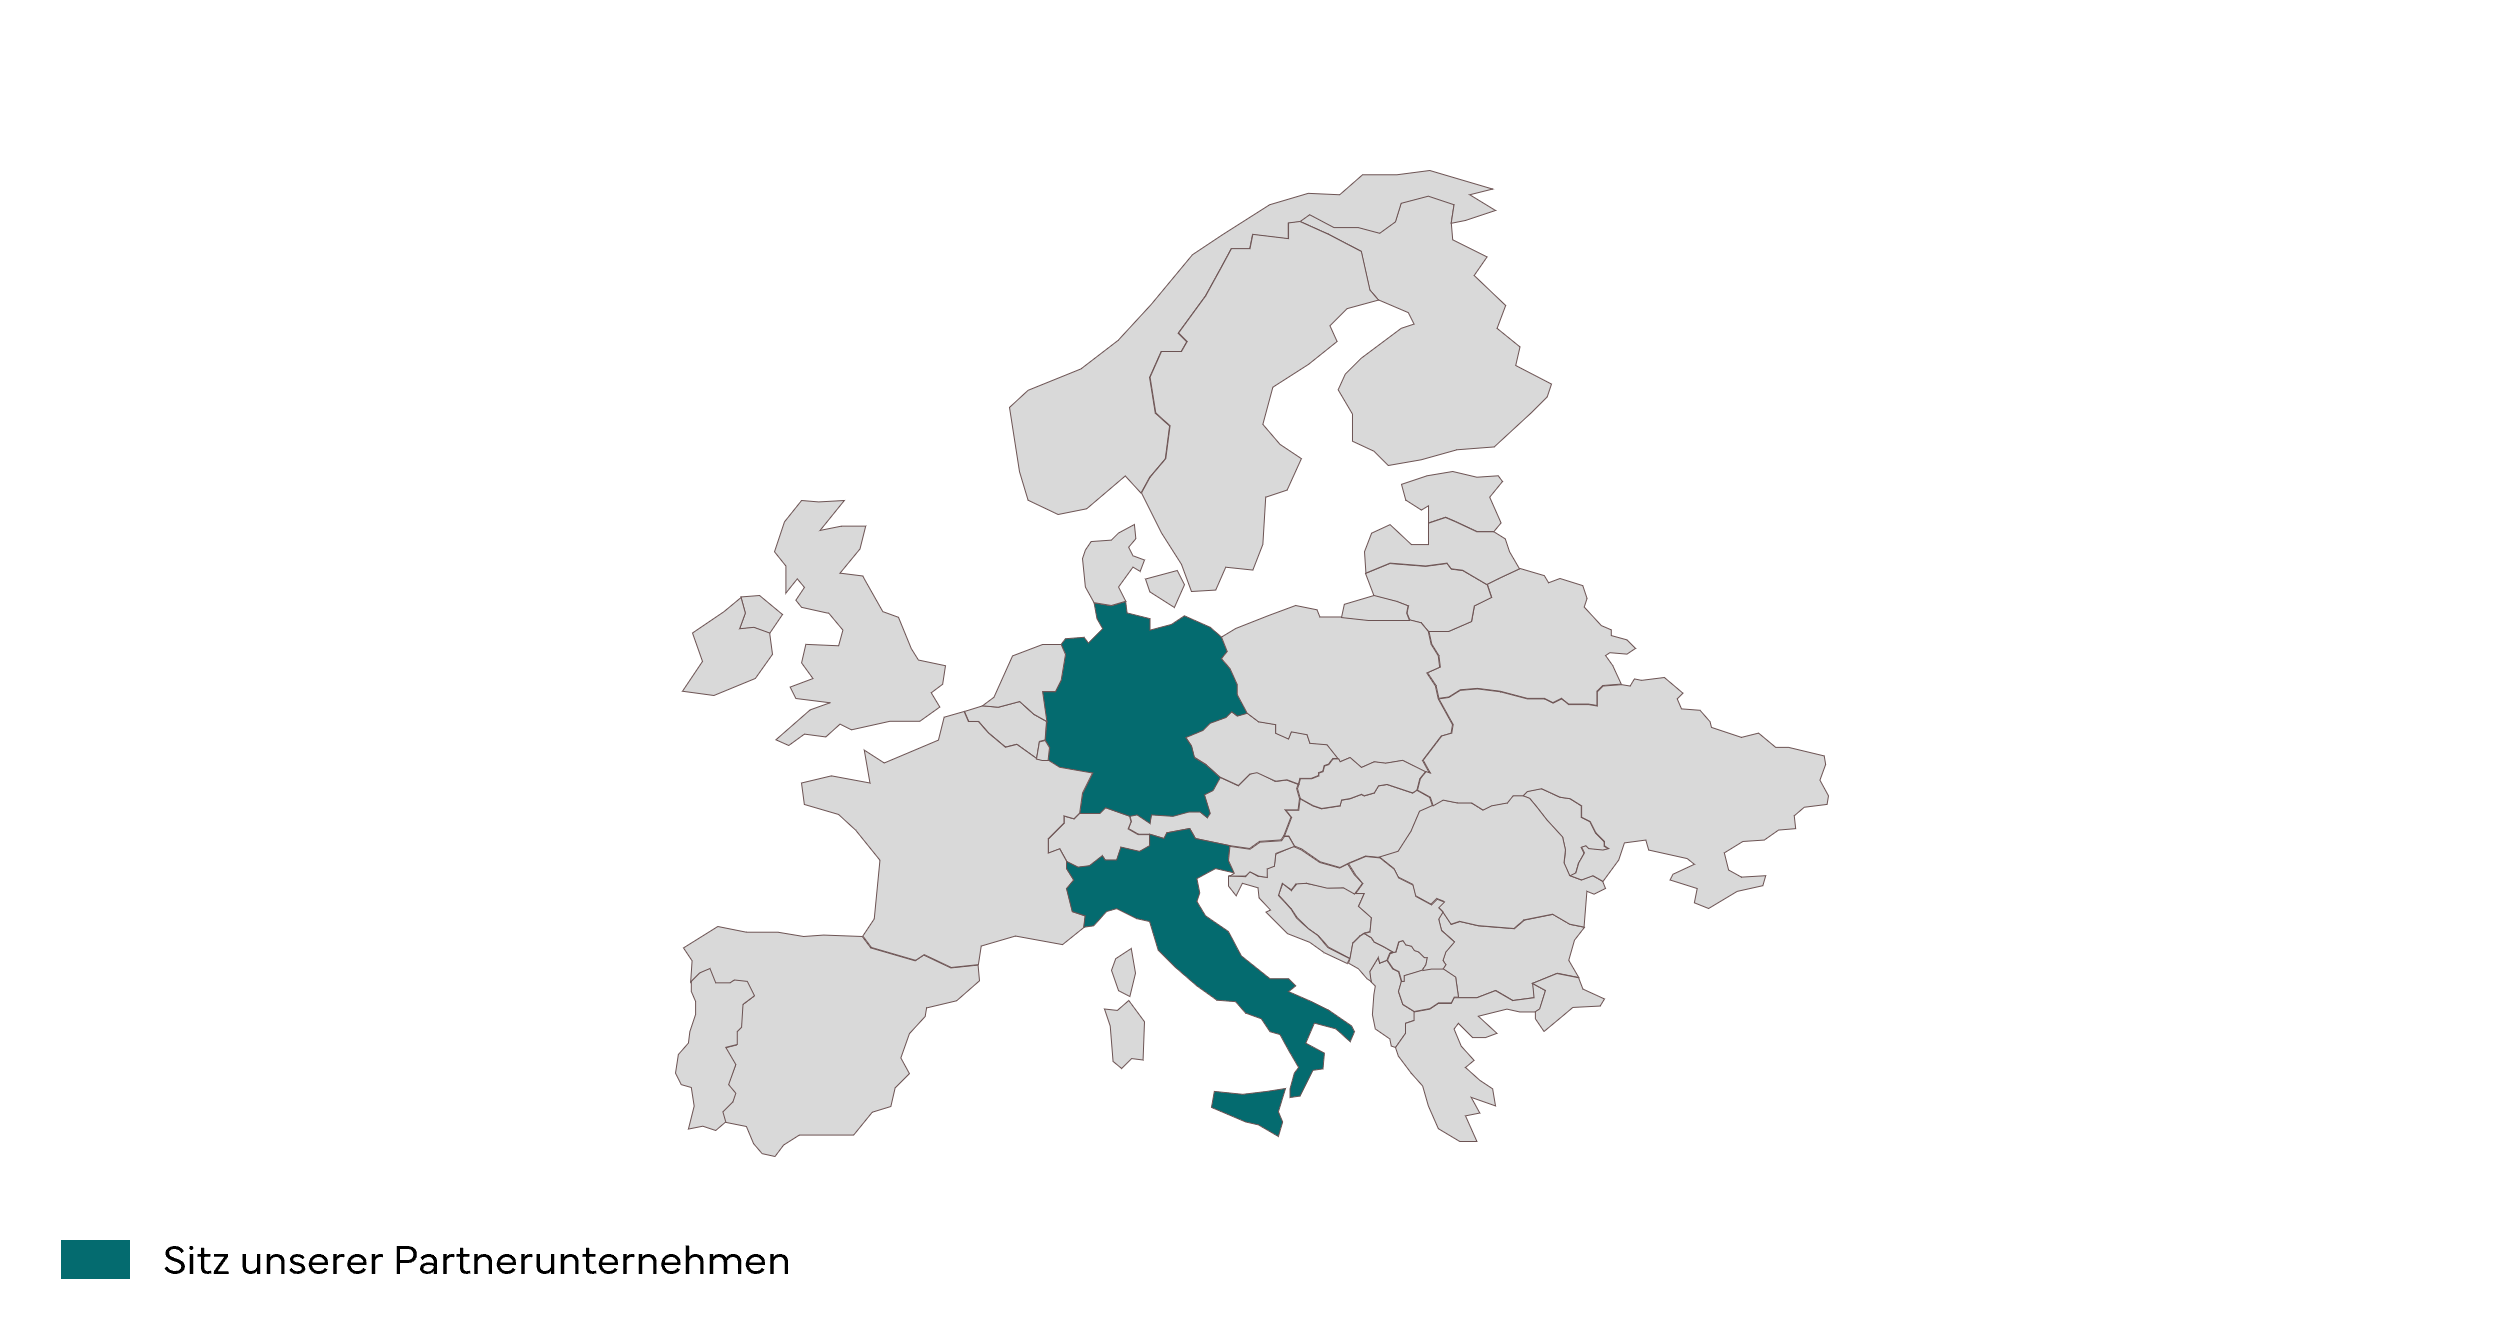 Karte von Europa mit dem Sitz der Partnerunternehmen von PROJECT CYCLE